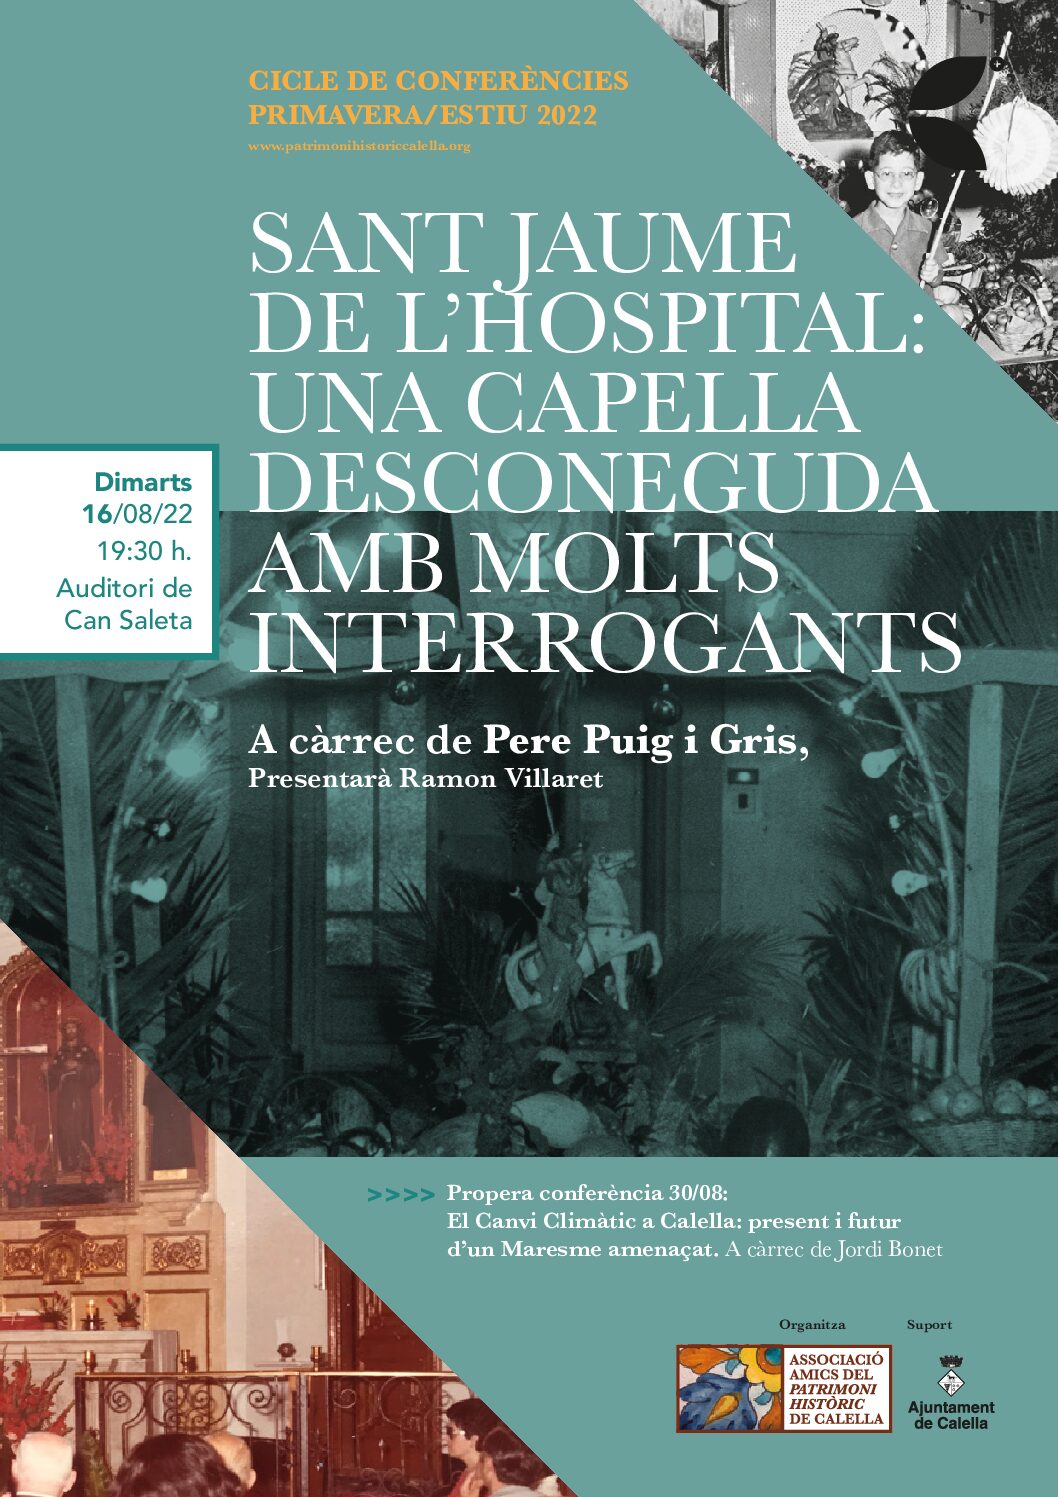 Conferència “Sant jaume de l’hospital: Una capella desconeguda amb molts interrogants”, per Pere Puig i Gris